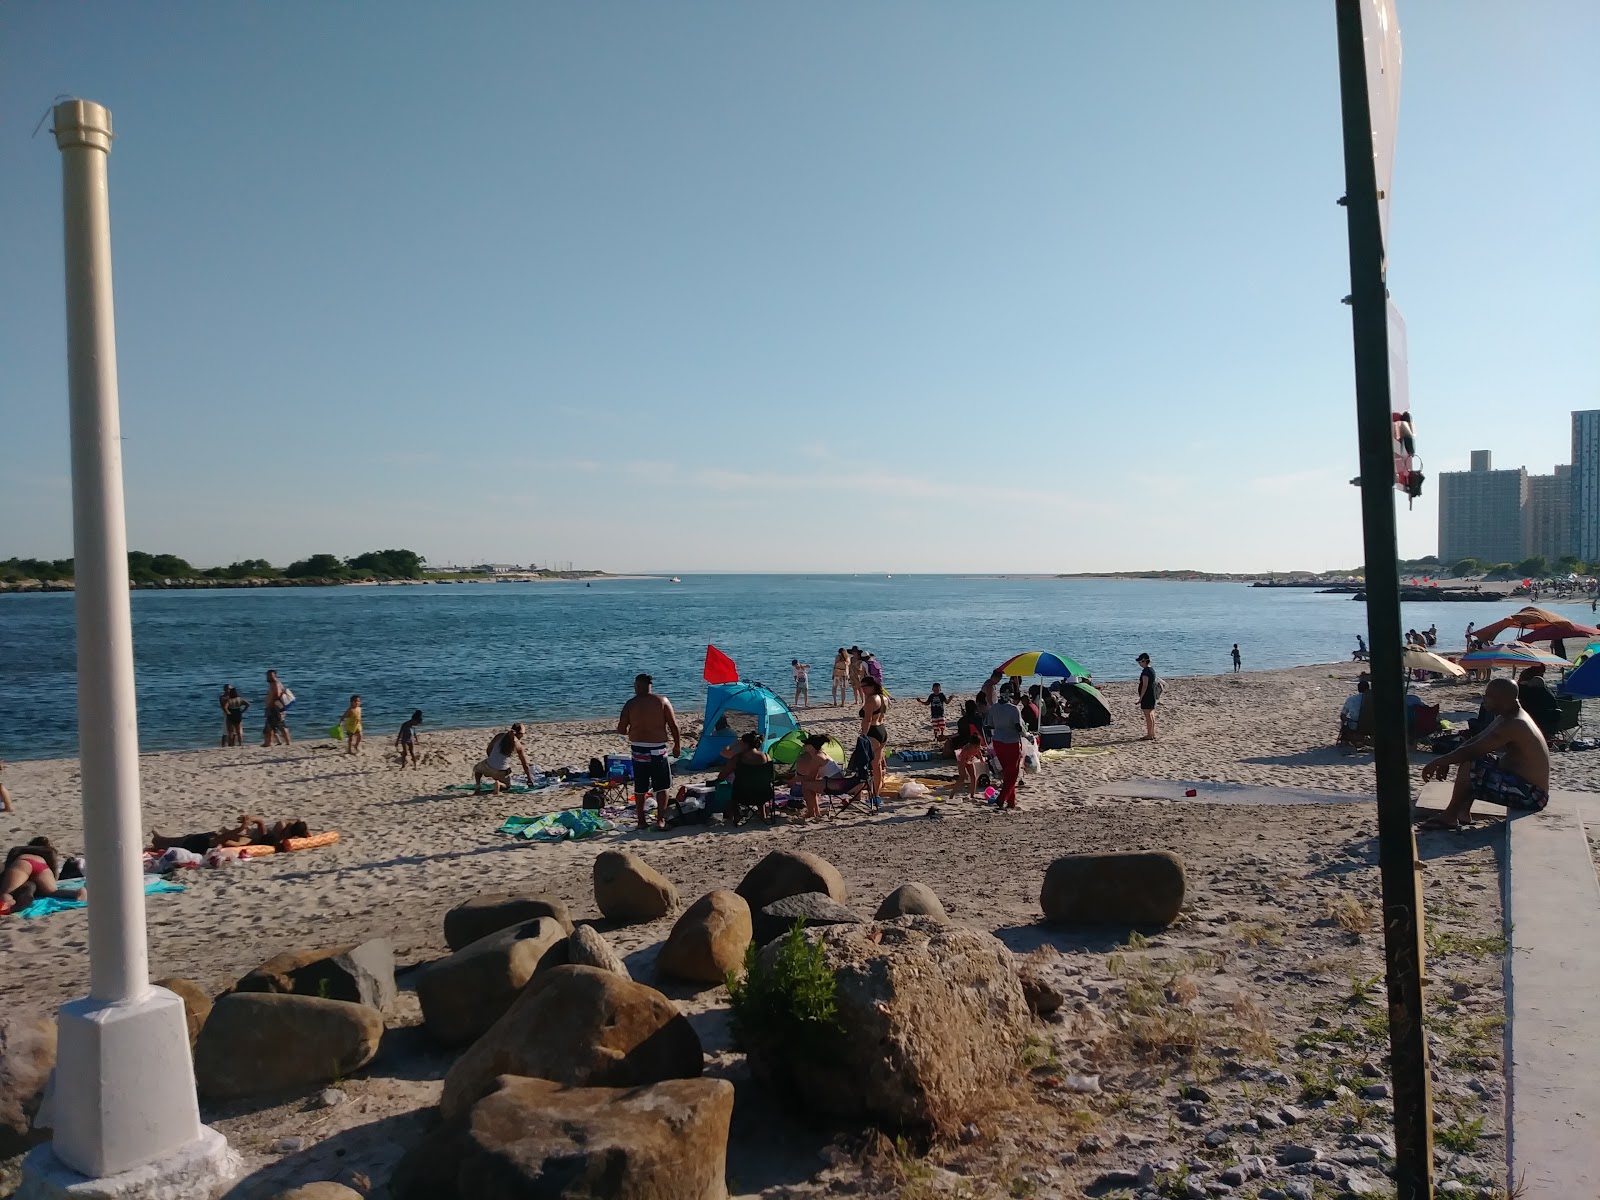 O'Donohue Park Beach'in fotoğrafı ve yerleşim